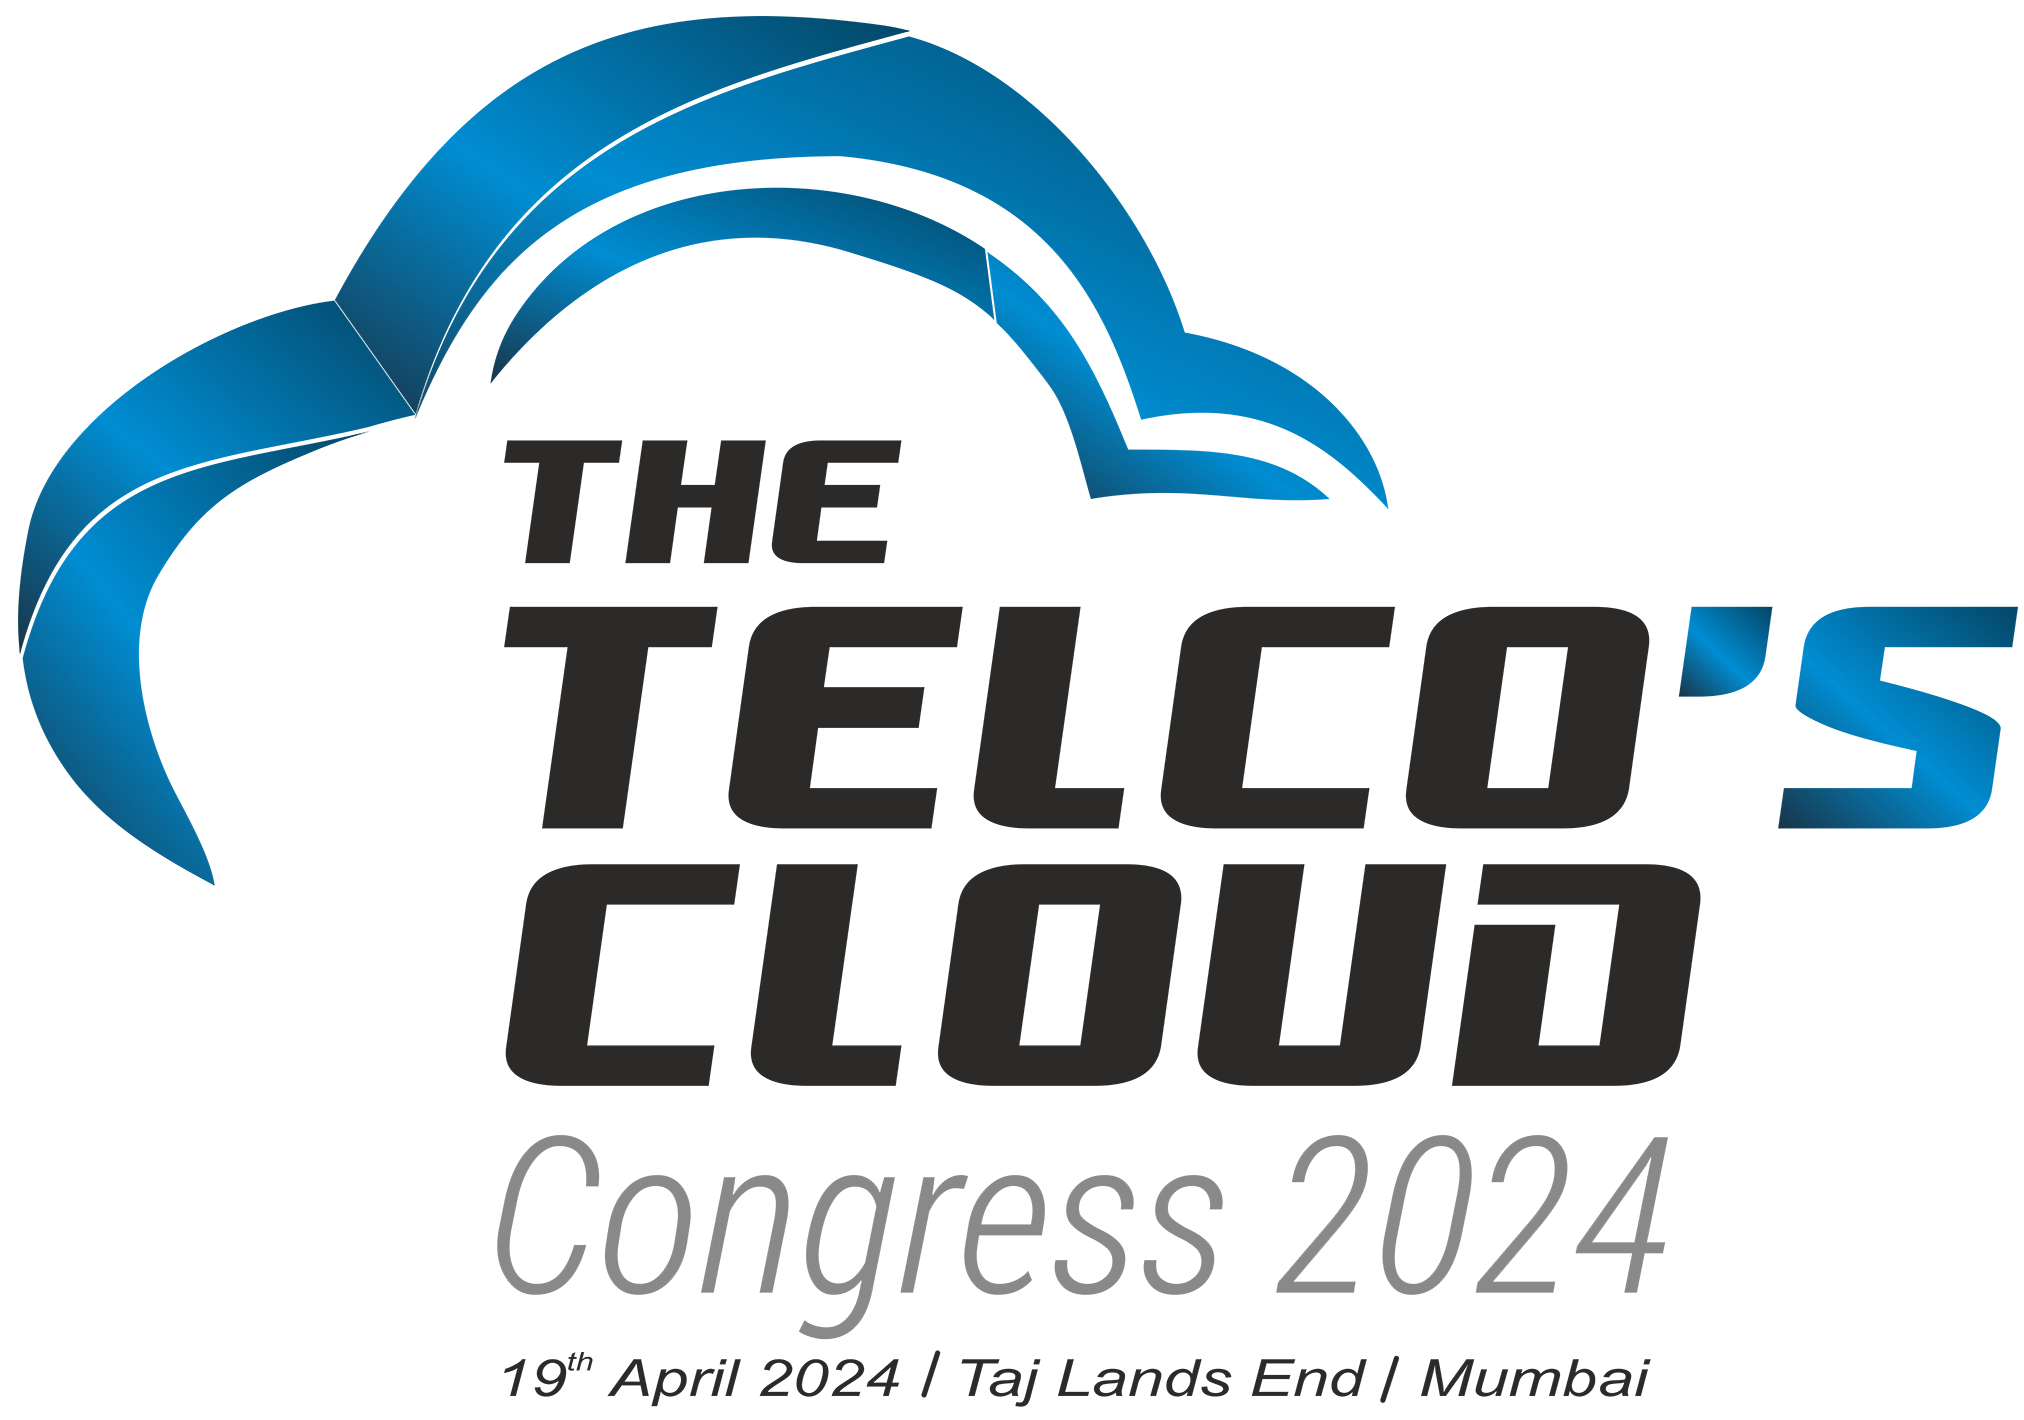 telco cloud